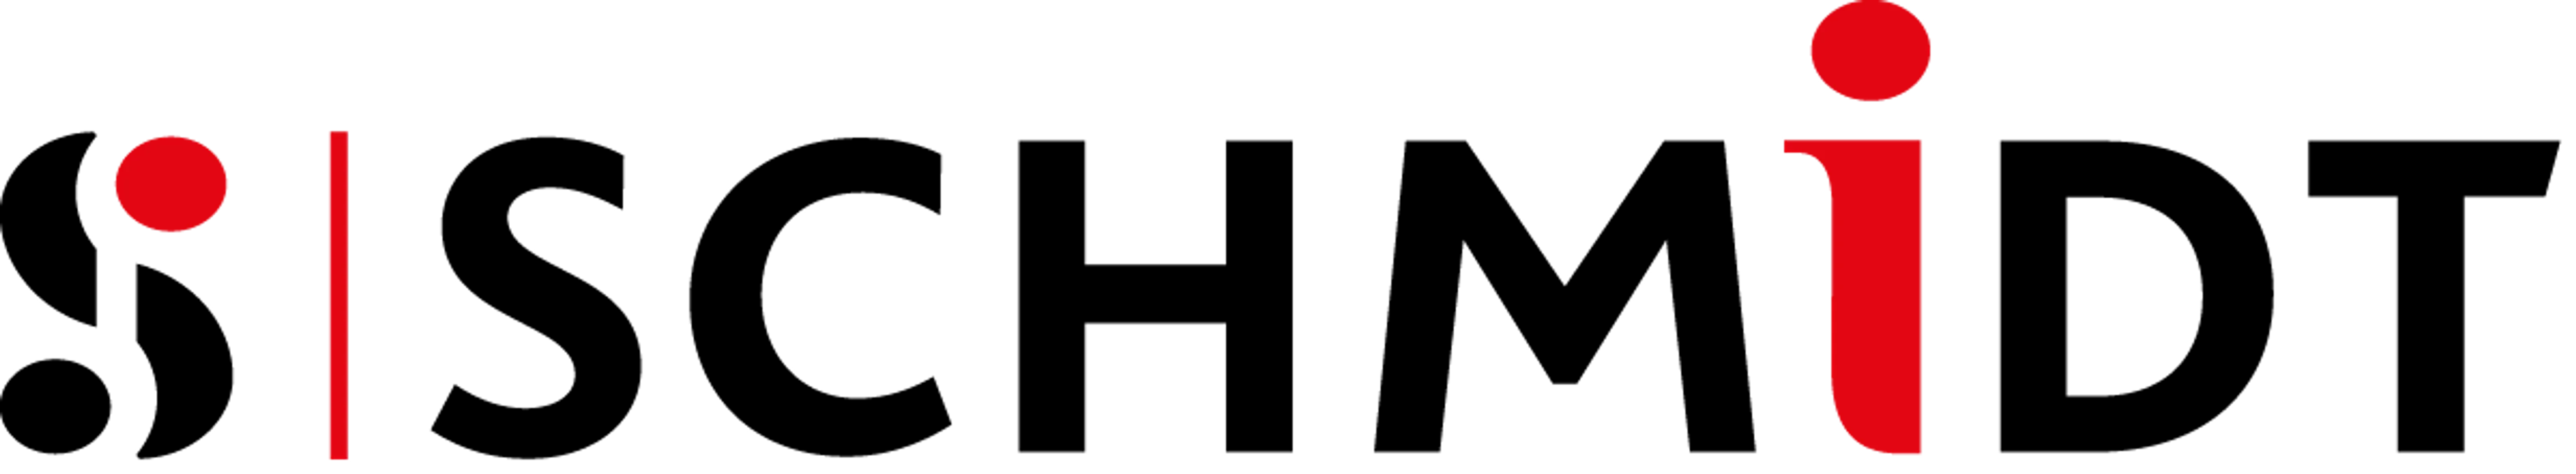 SCHMIDT logo